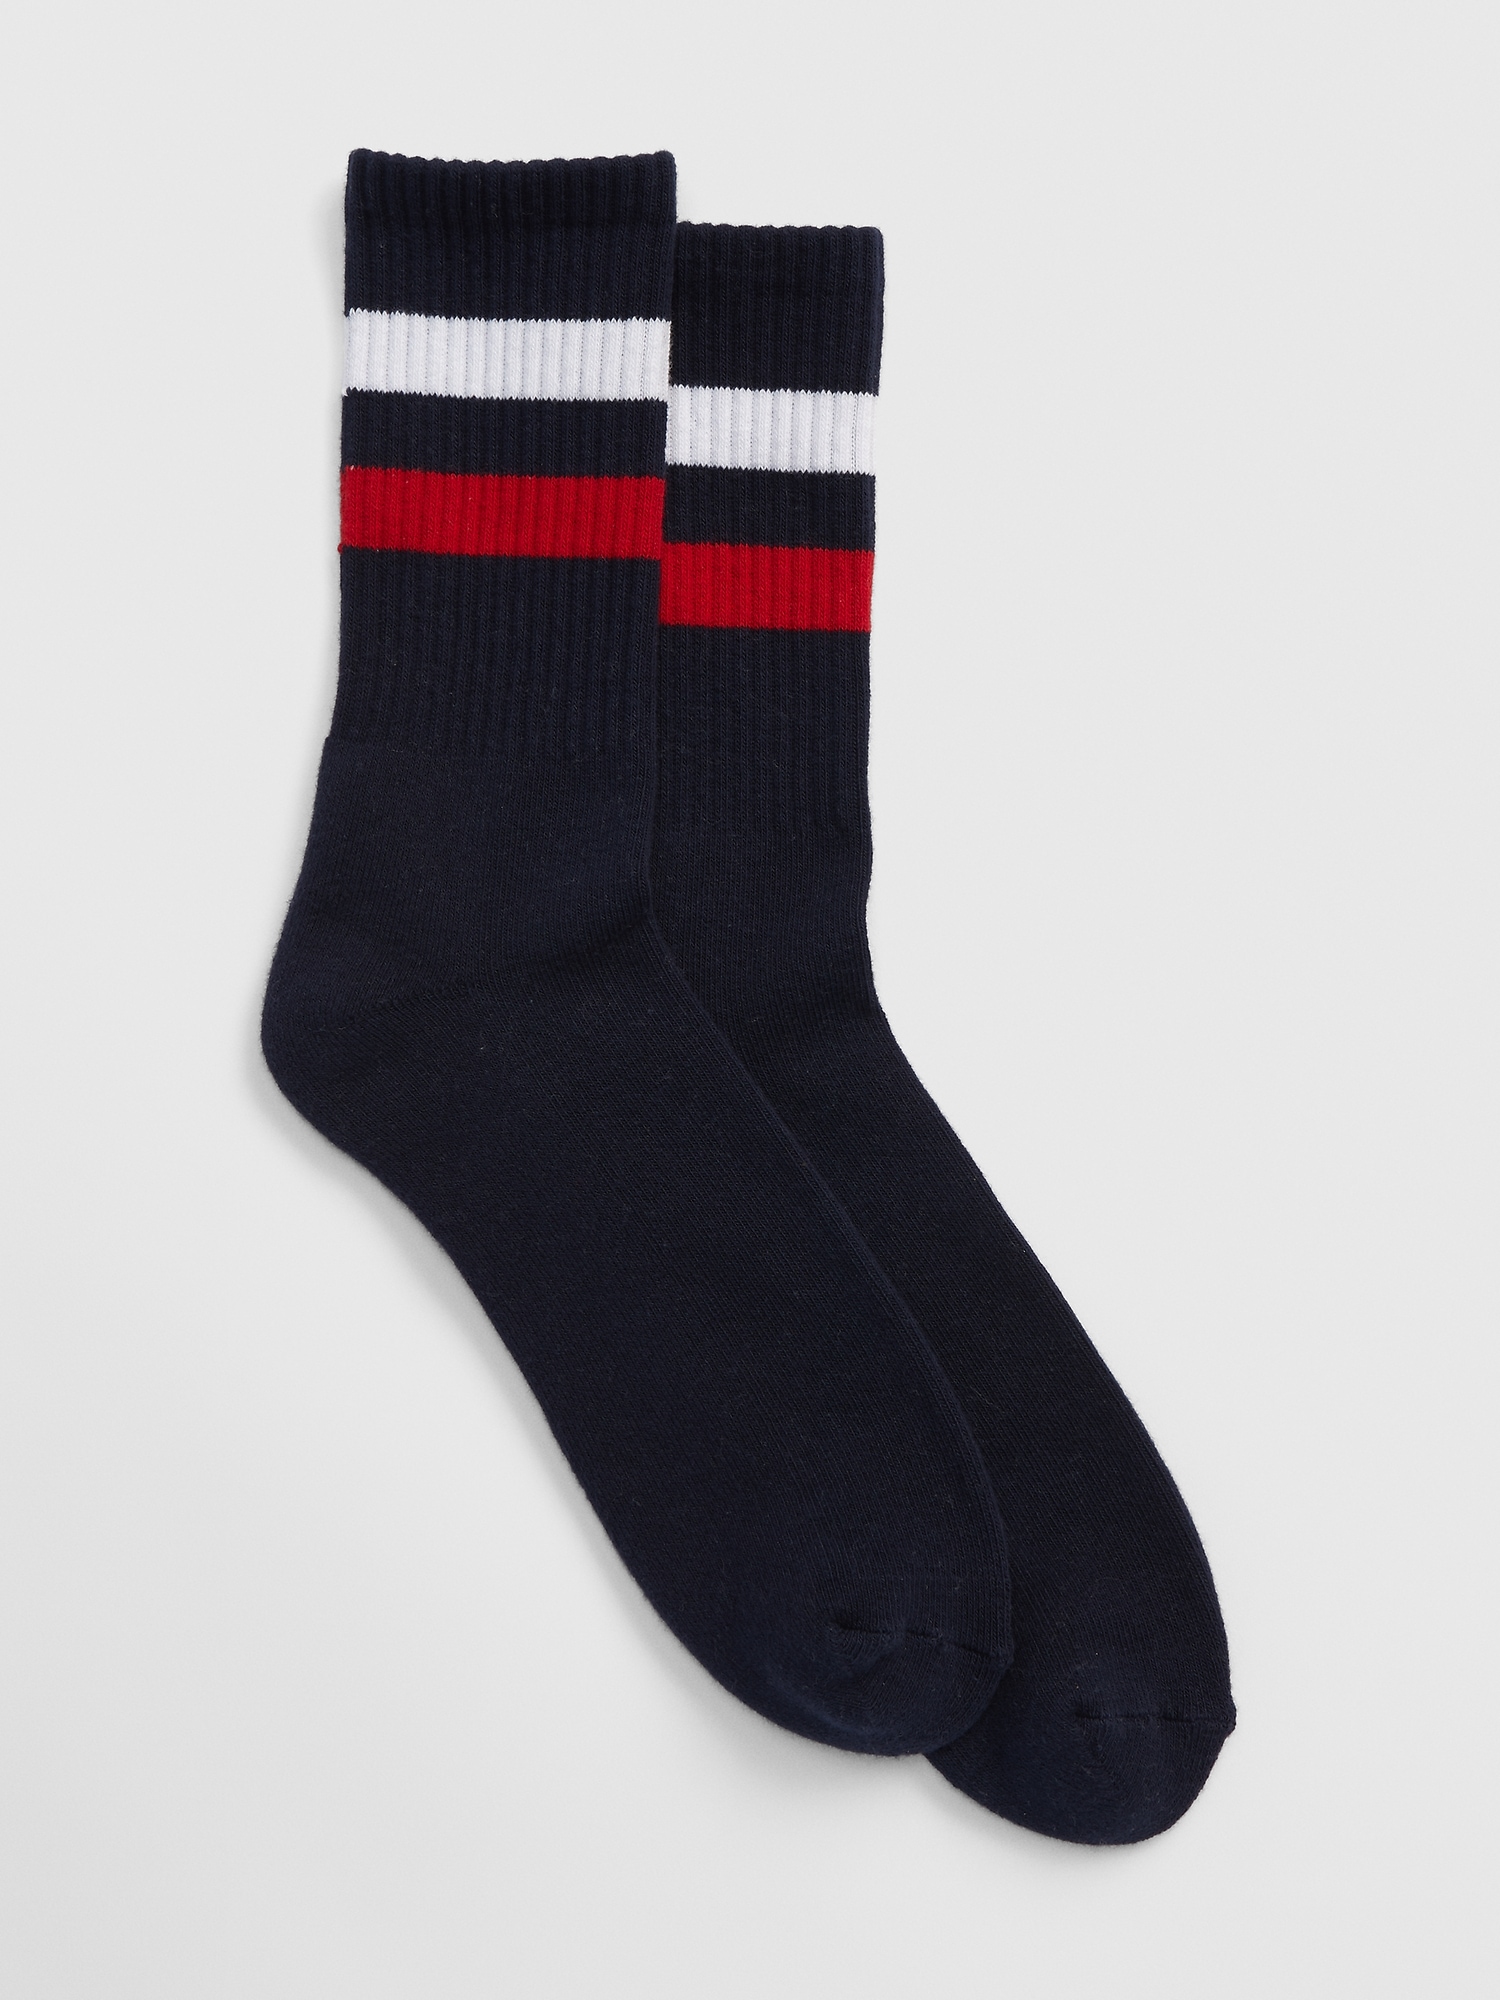 Stripe Tube Socks | Gap